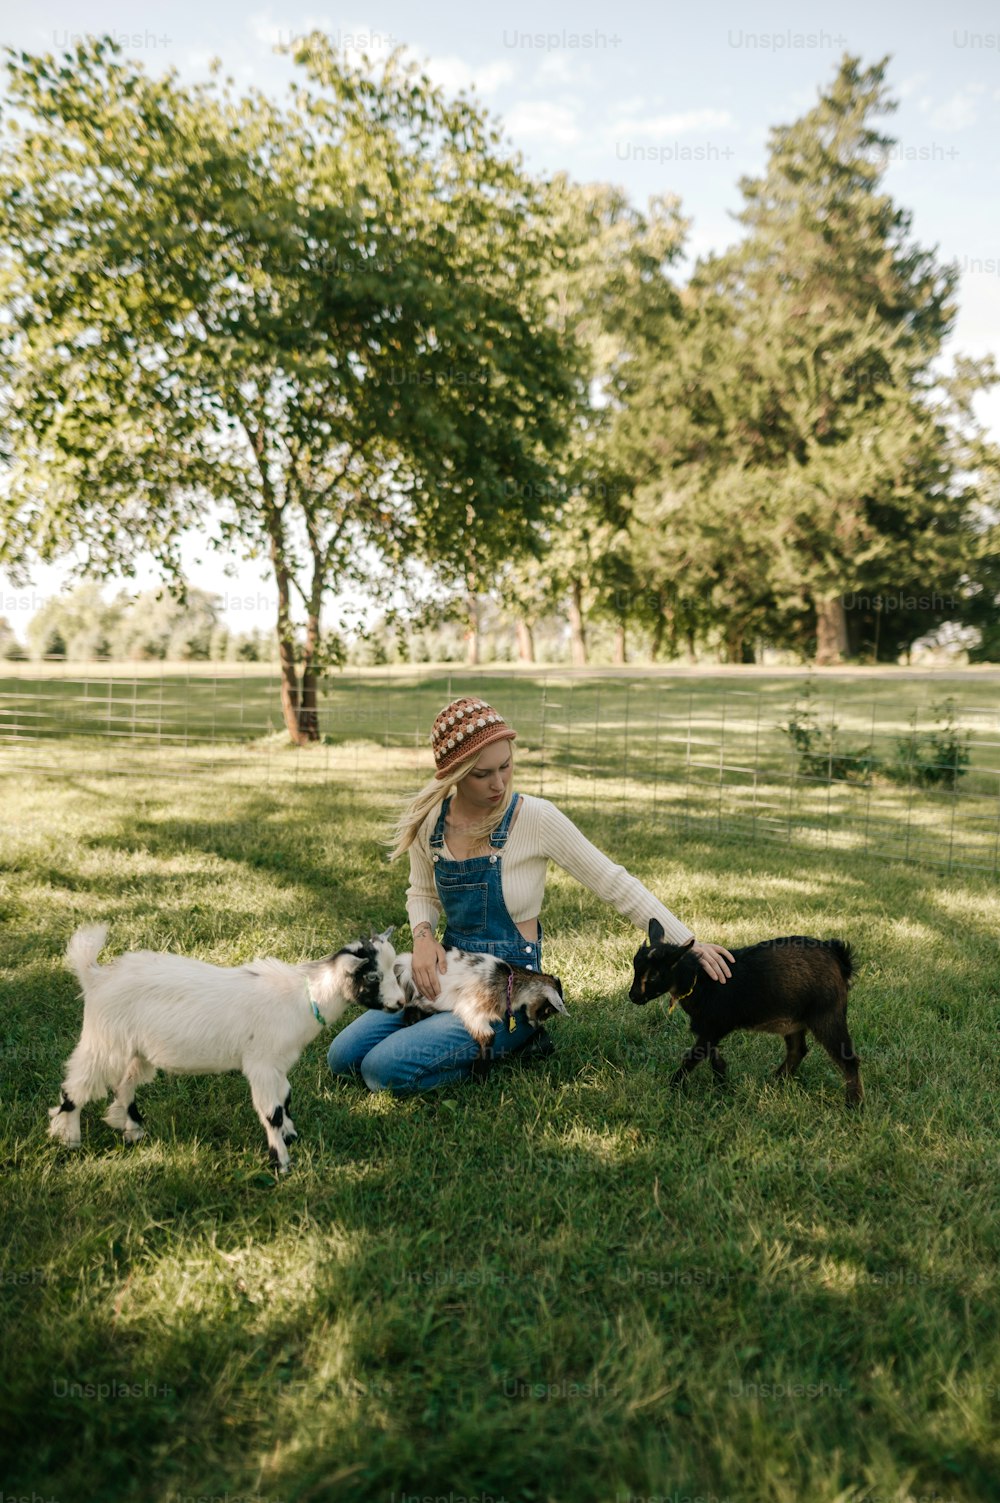 작은 개 두 마리와 함께 풀밭에 앉아 있는 여자